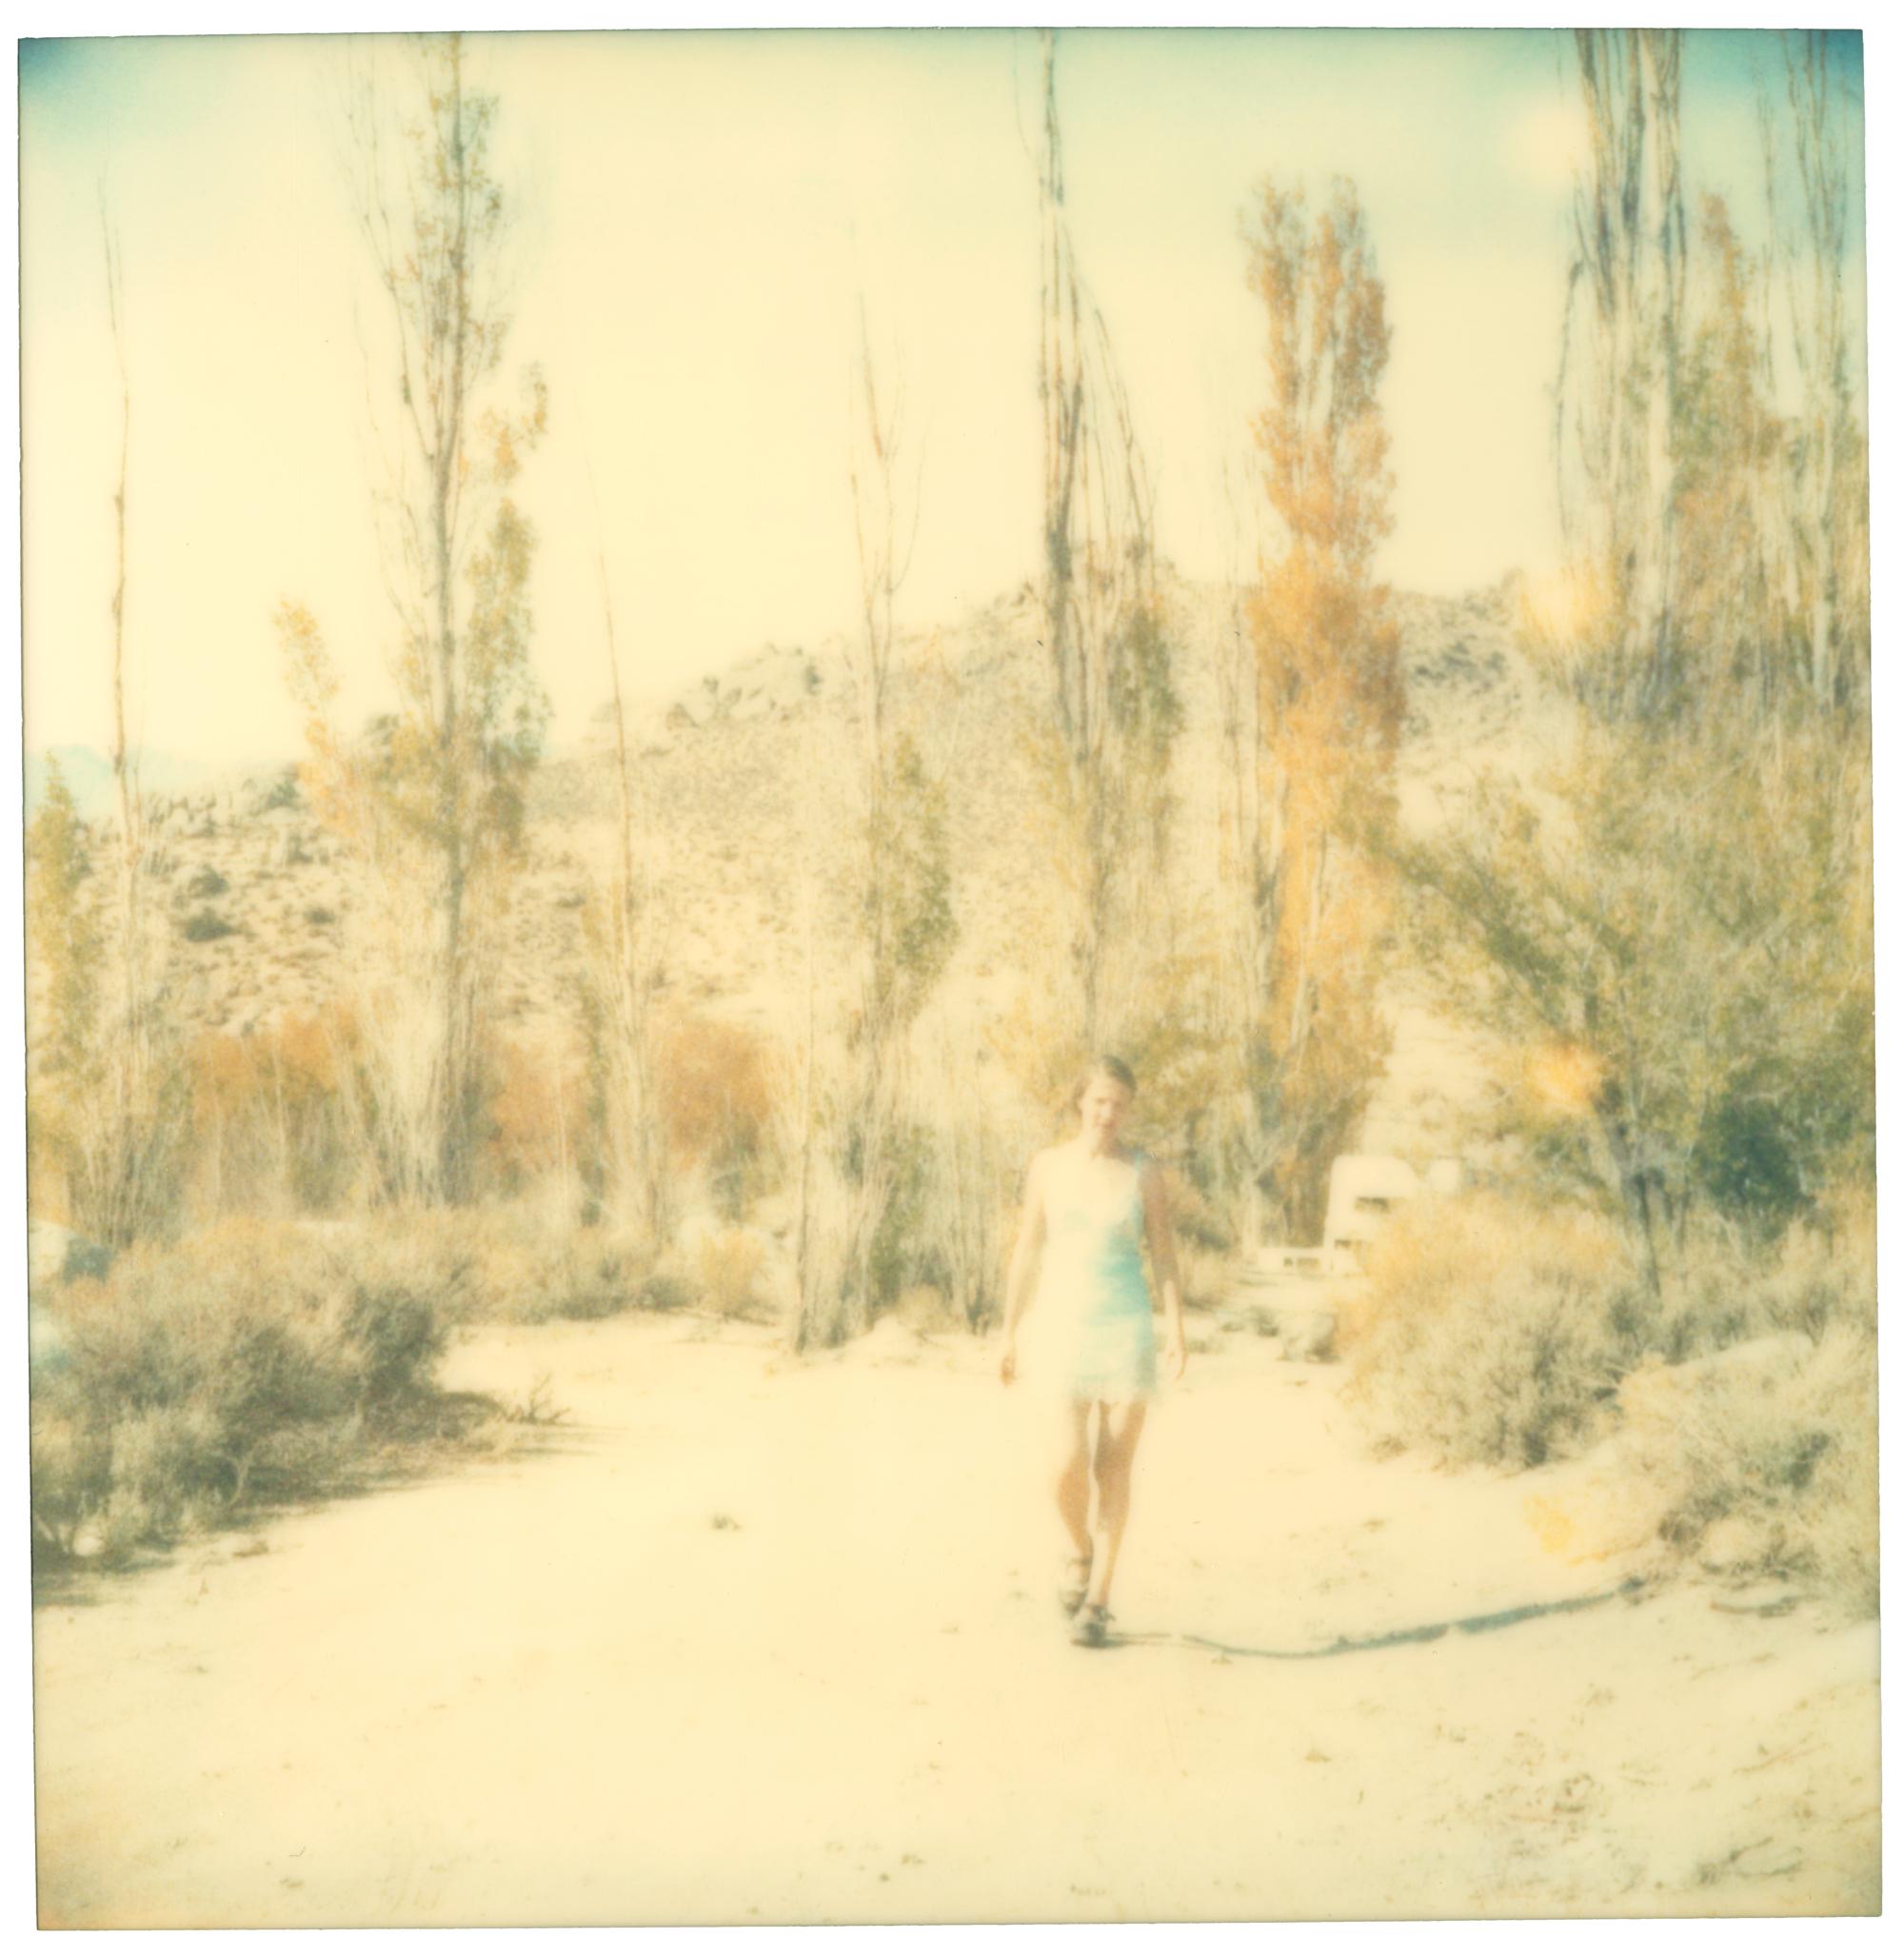 La dernière saison (Wastelands), diptyque - Polaroid, expiré. Contemporain, Couleur - Photograph de Stefanie Schneider